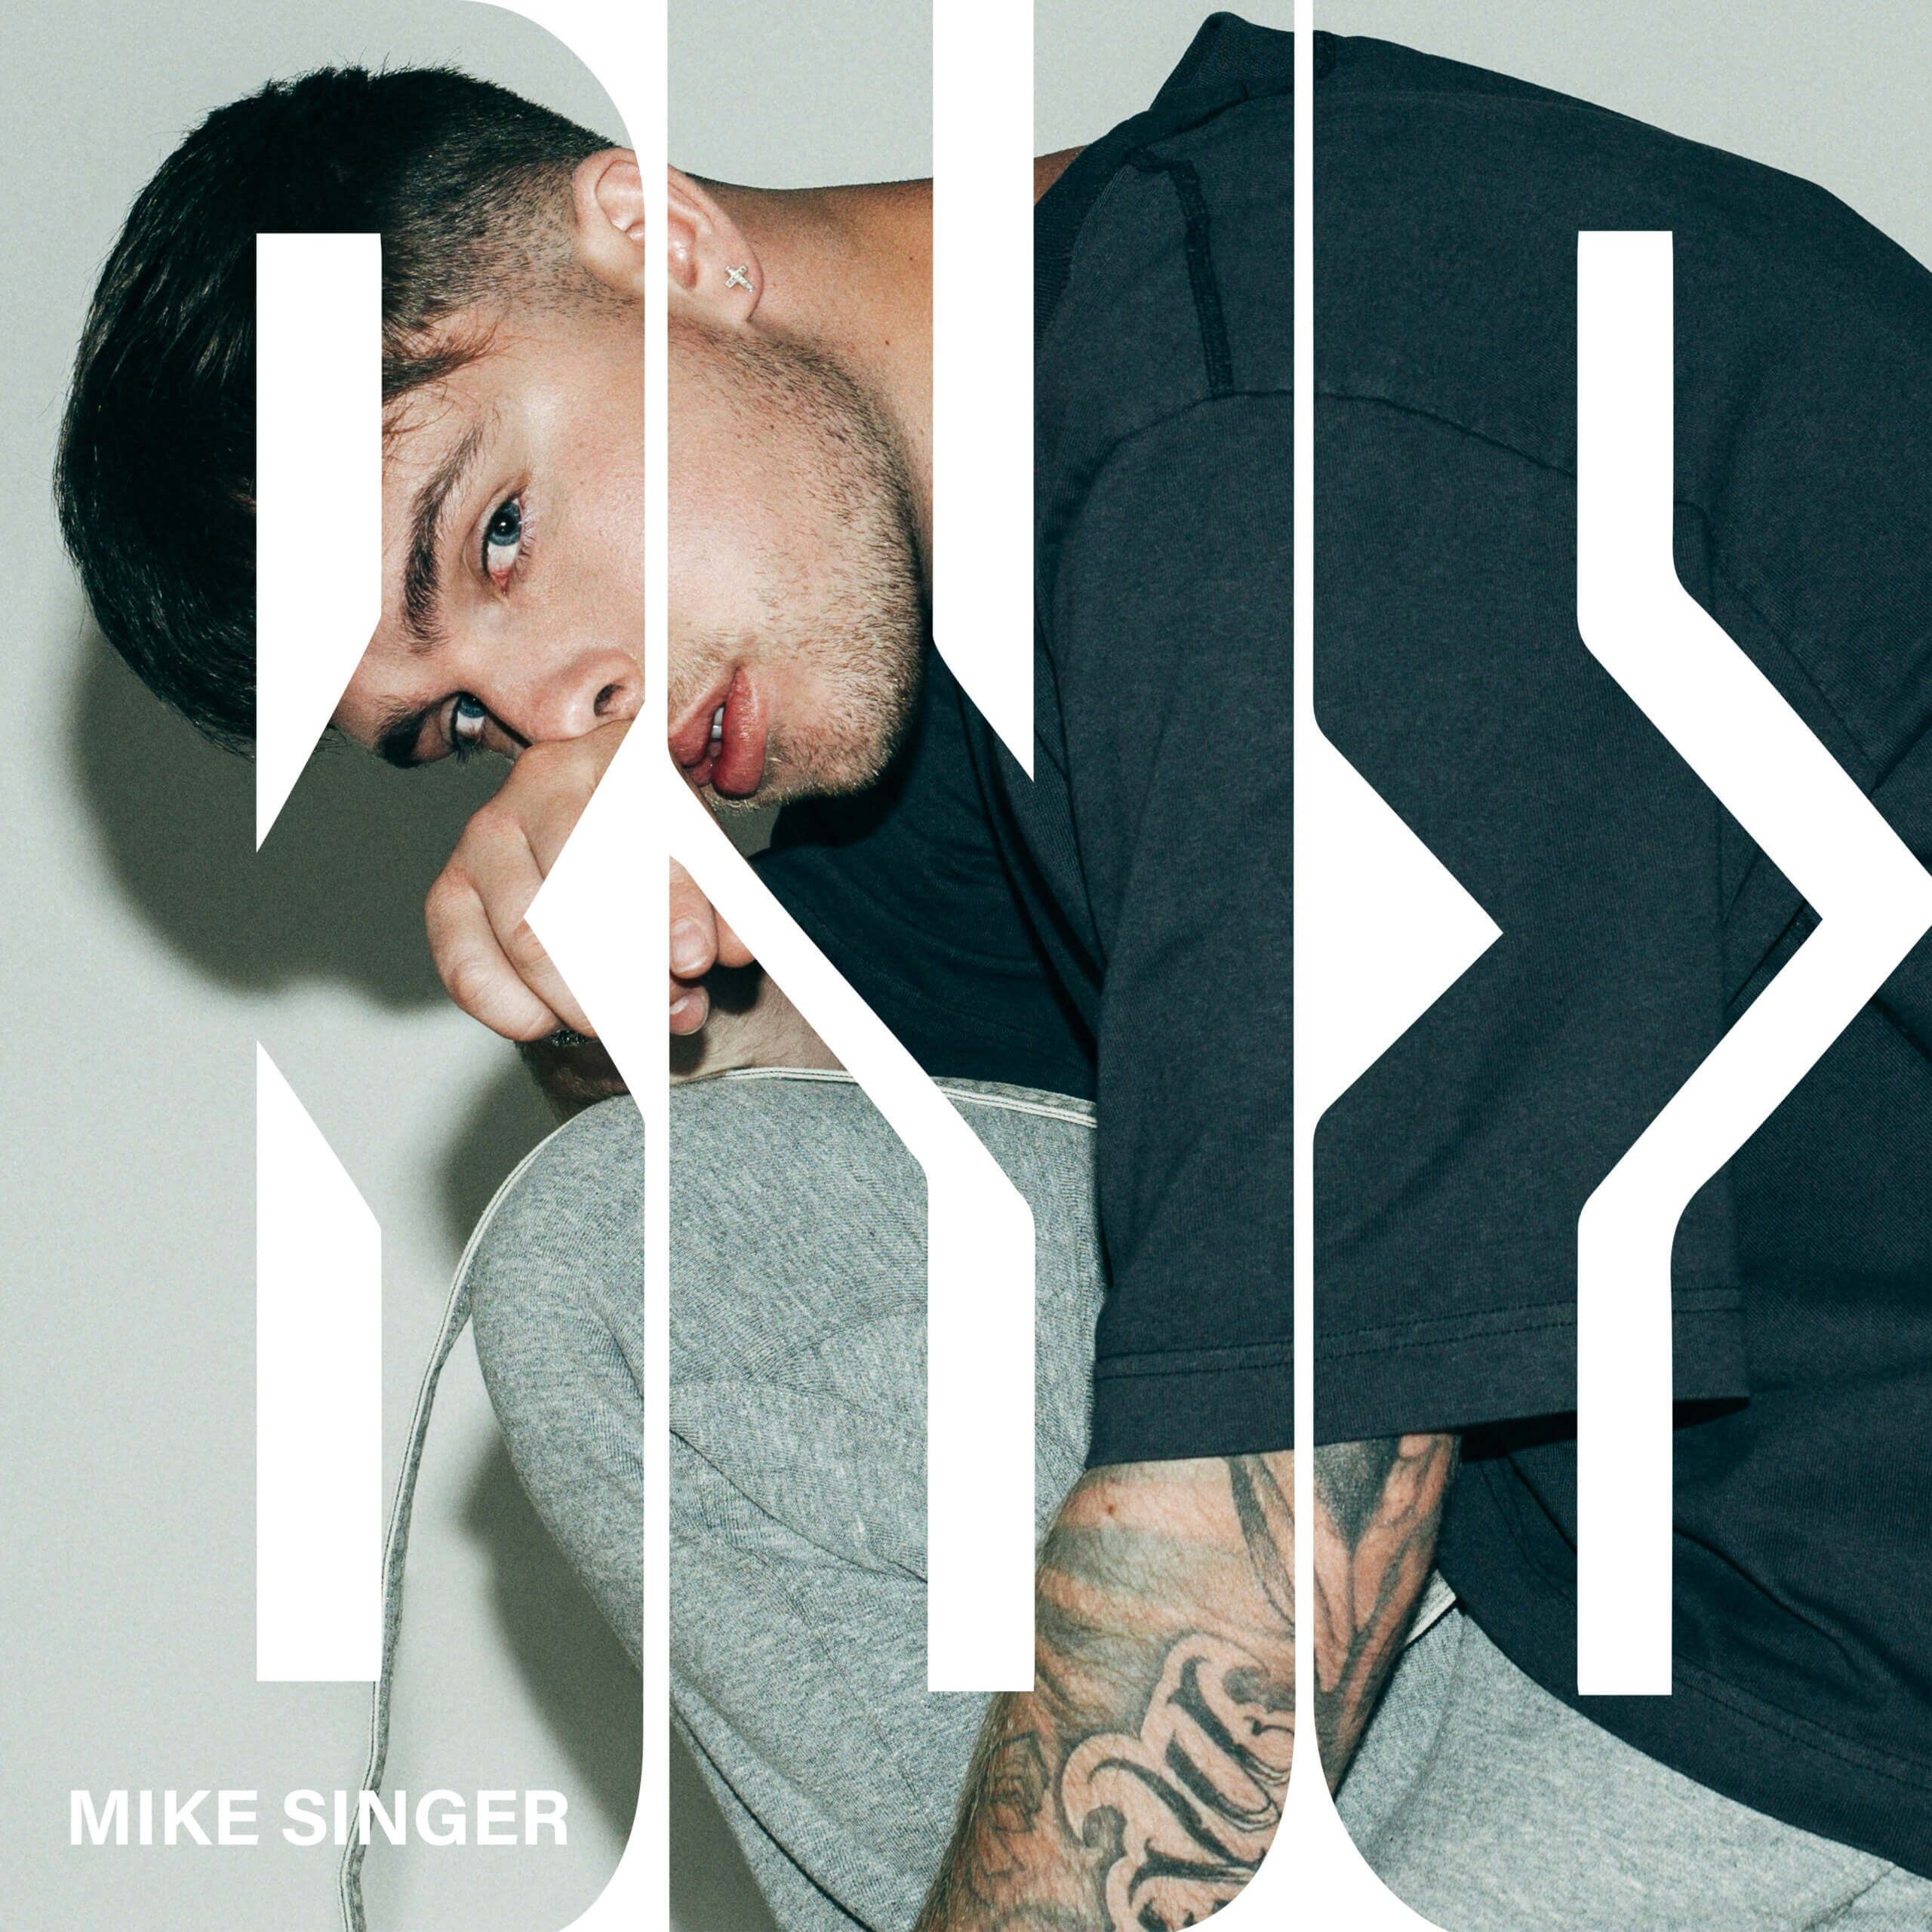 Mike Singer – “Bye“ (Single – Warner Music Germany)